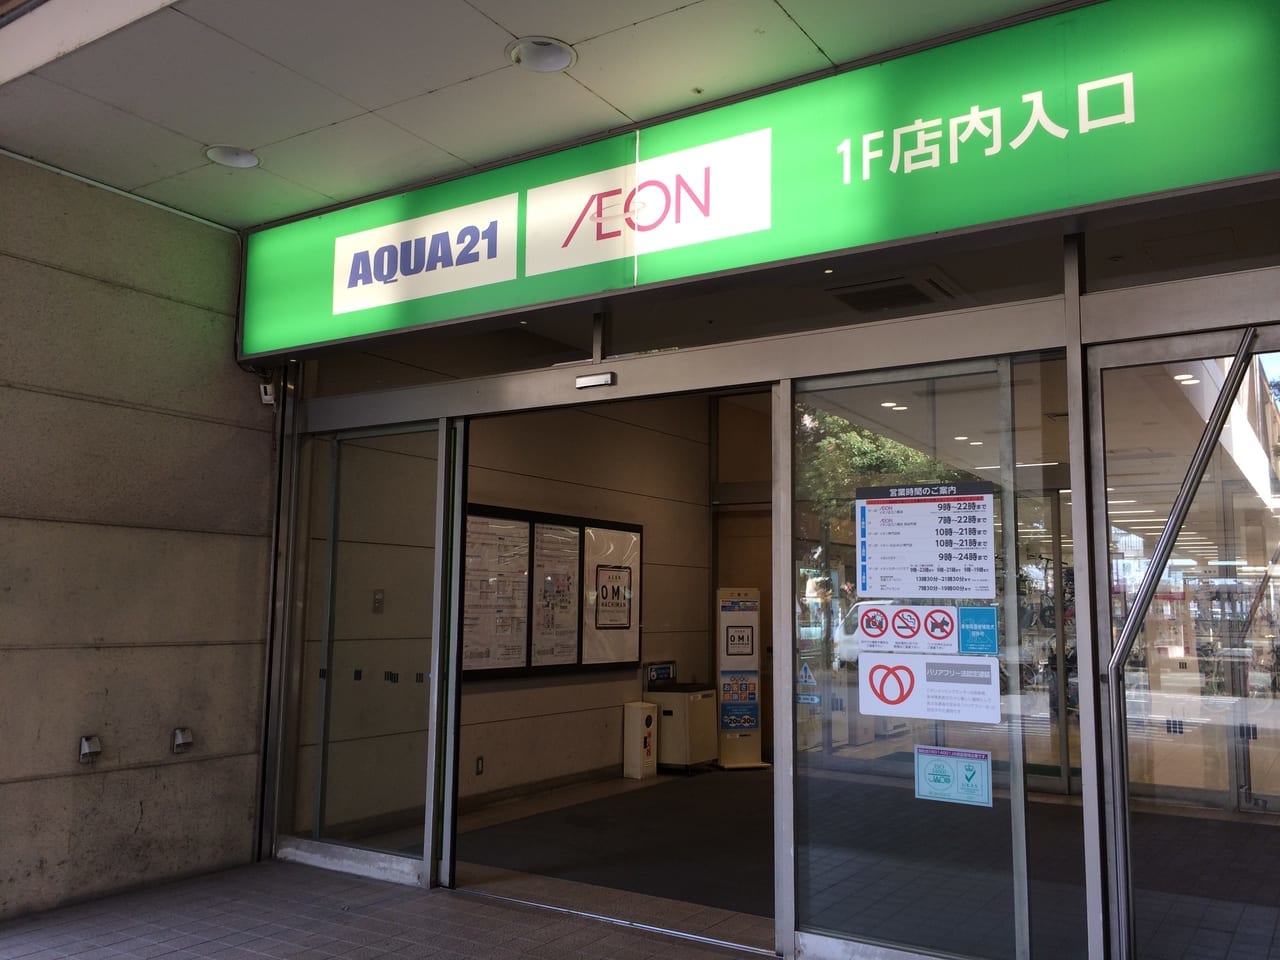 イオン近江八幡ショッピングセンターの2番街のAQUA21、入り口